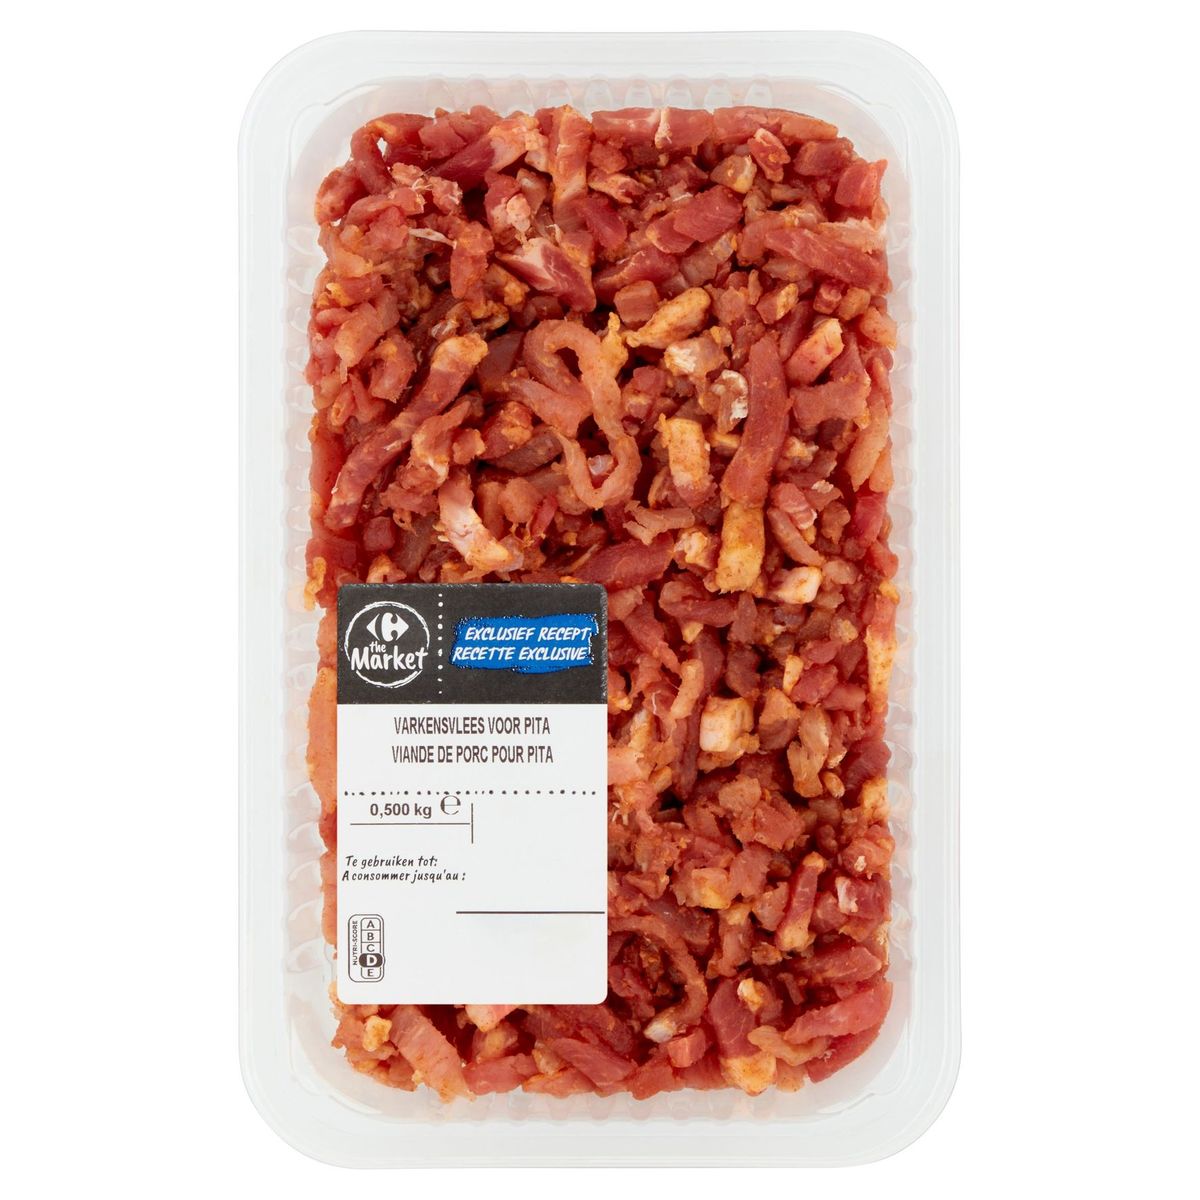 Carrefour The Market Exclusief Recept Varkensvlees voor Pita 0.500 kg